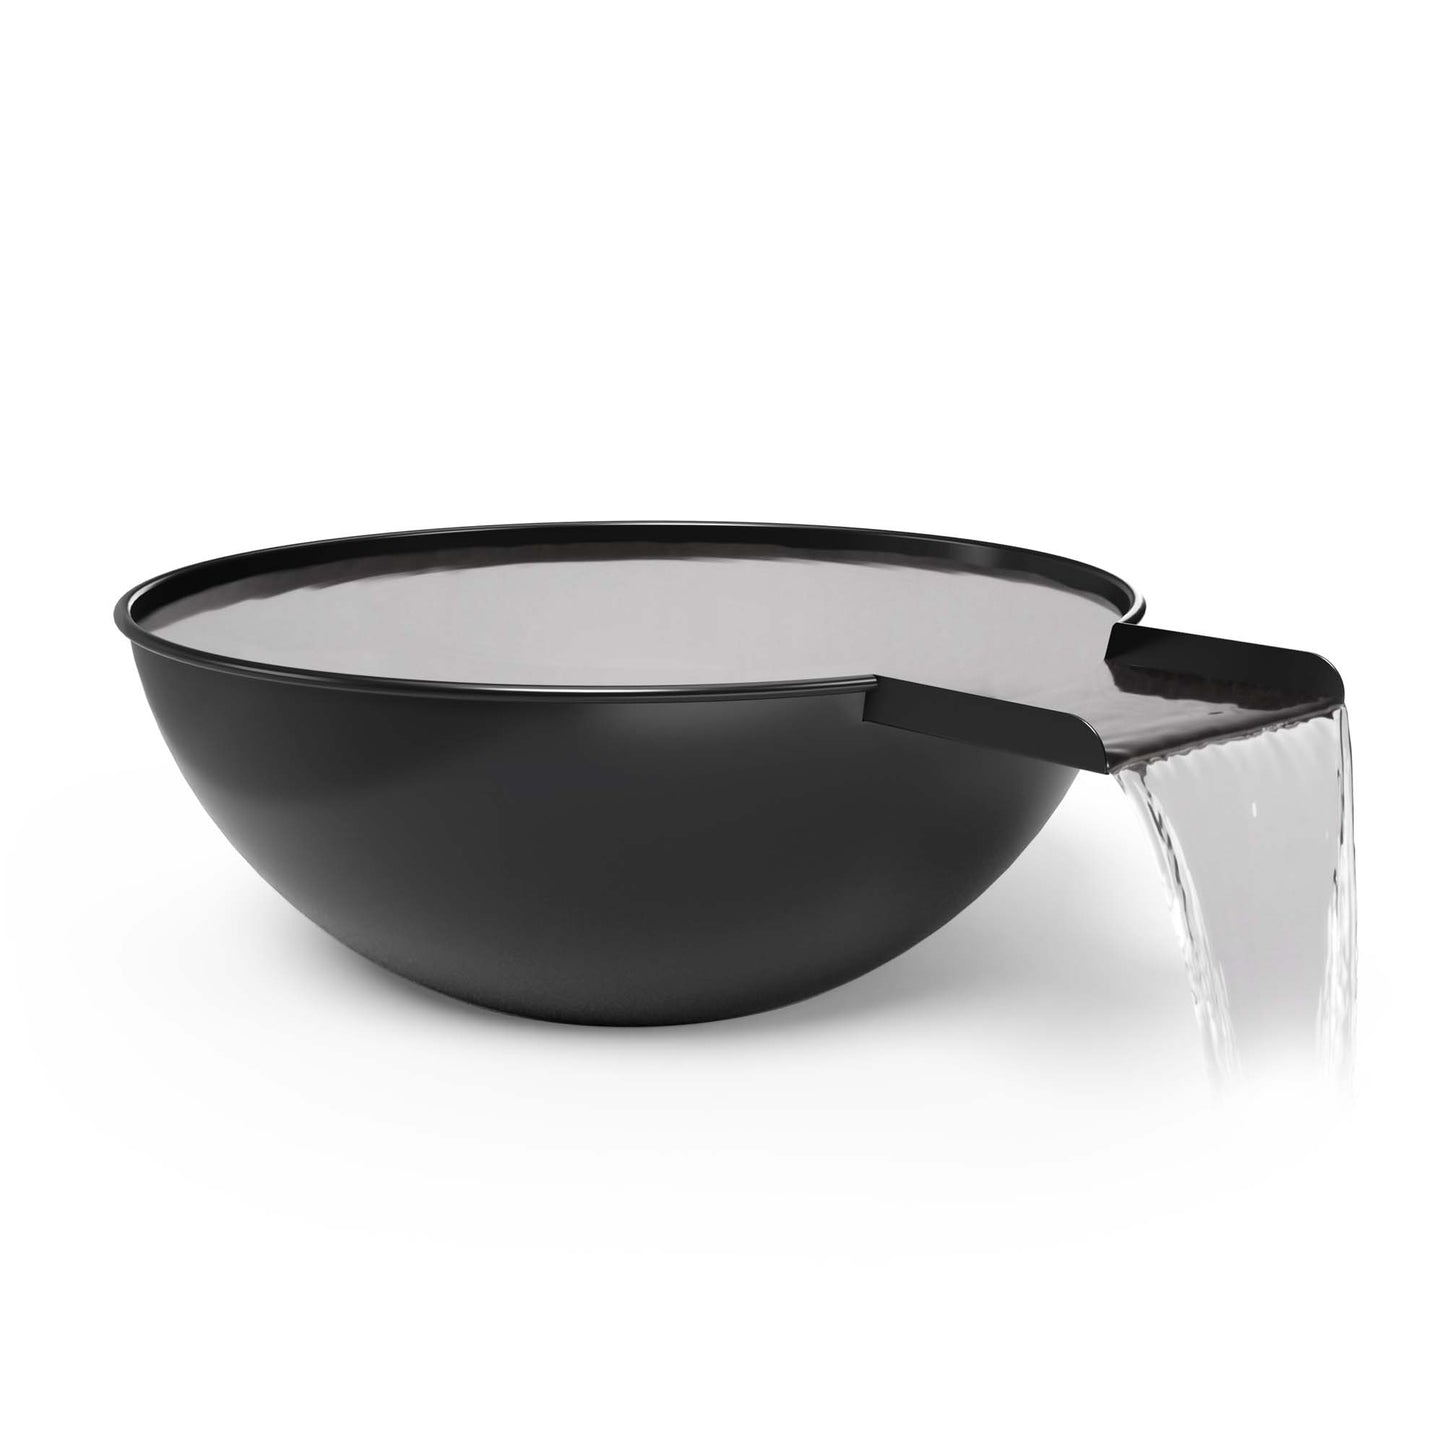 Sedona Water Bowl - Metal Powder Coat - Black (-BLK), 48"